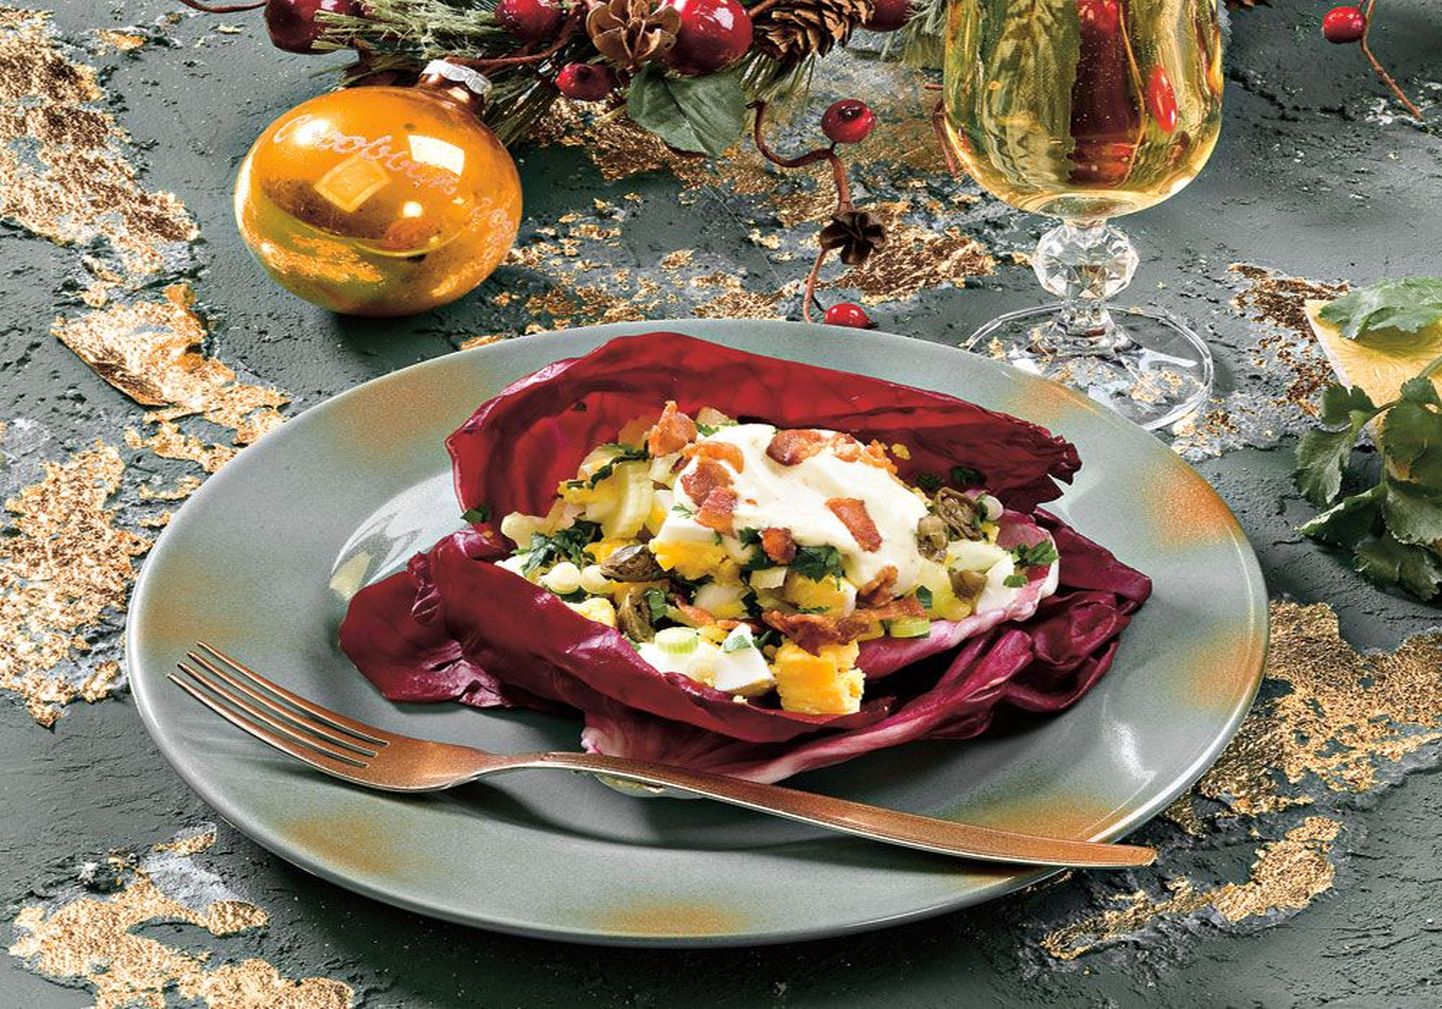 Салат радичио уже своим необычным цветом может служить прекрасным украшением рождественского стола.